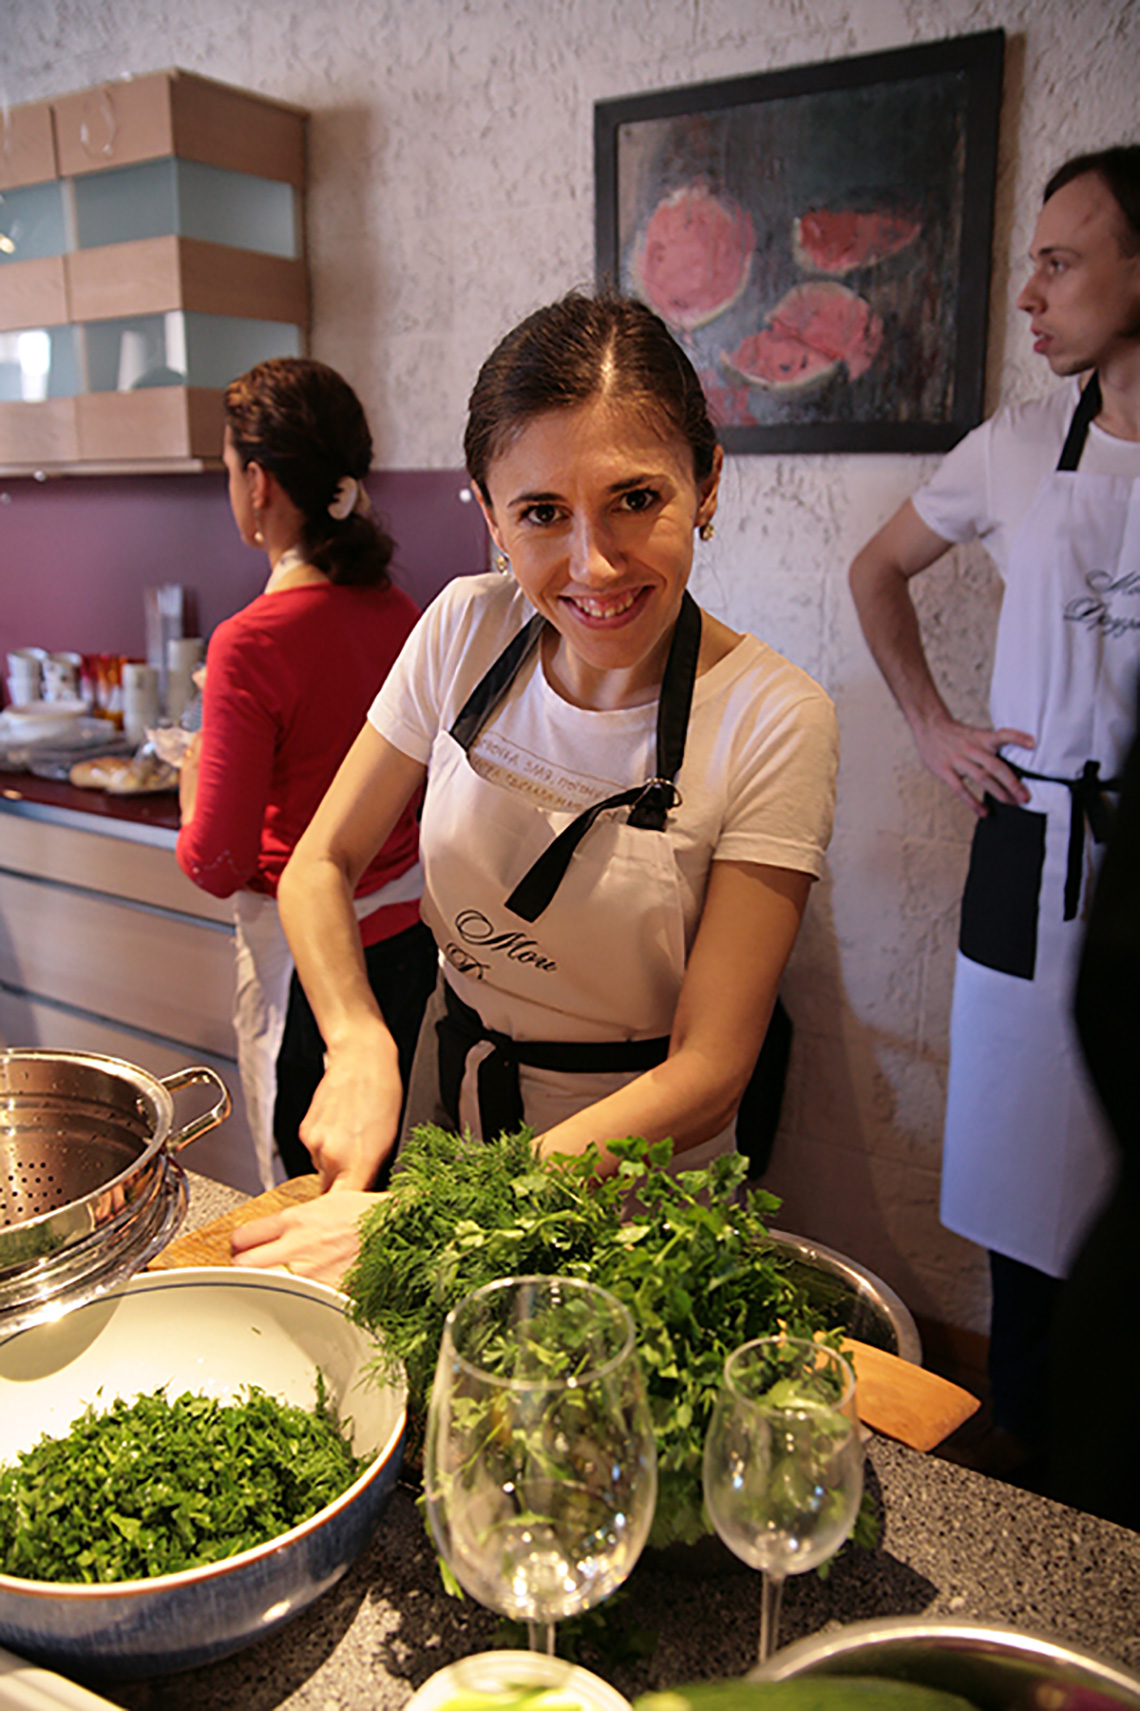 Greens. The birthday of “My Friends” cooking school. Cooking school in Ukraine.